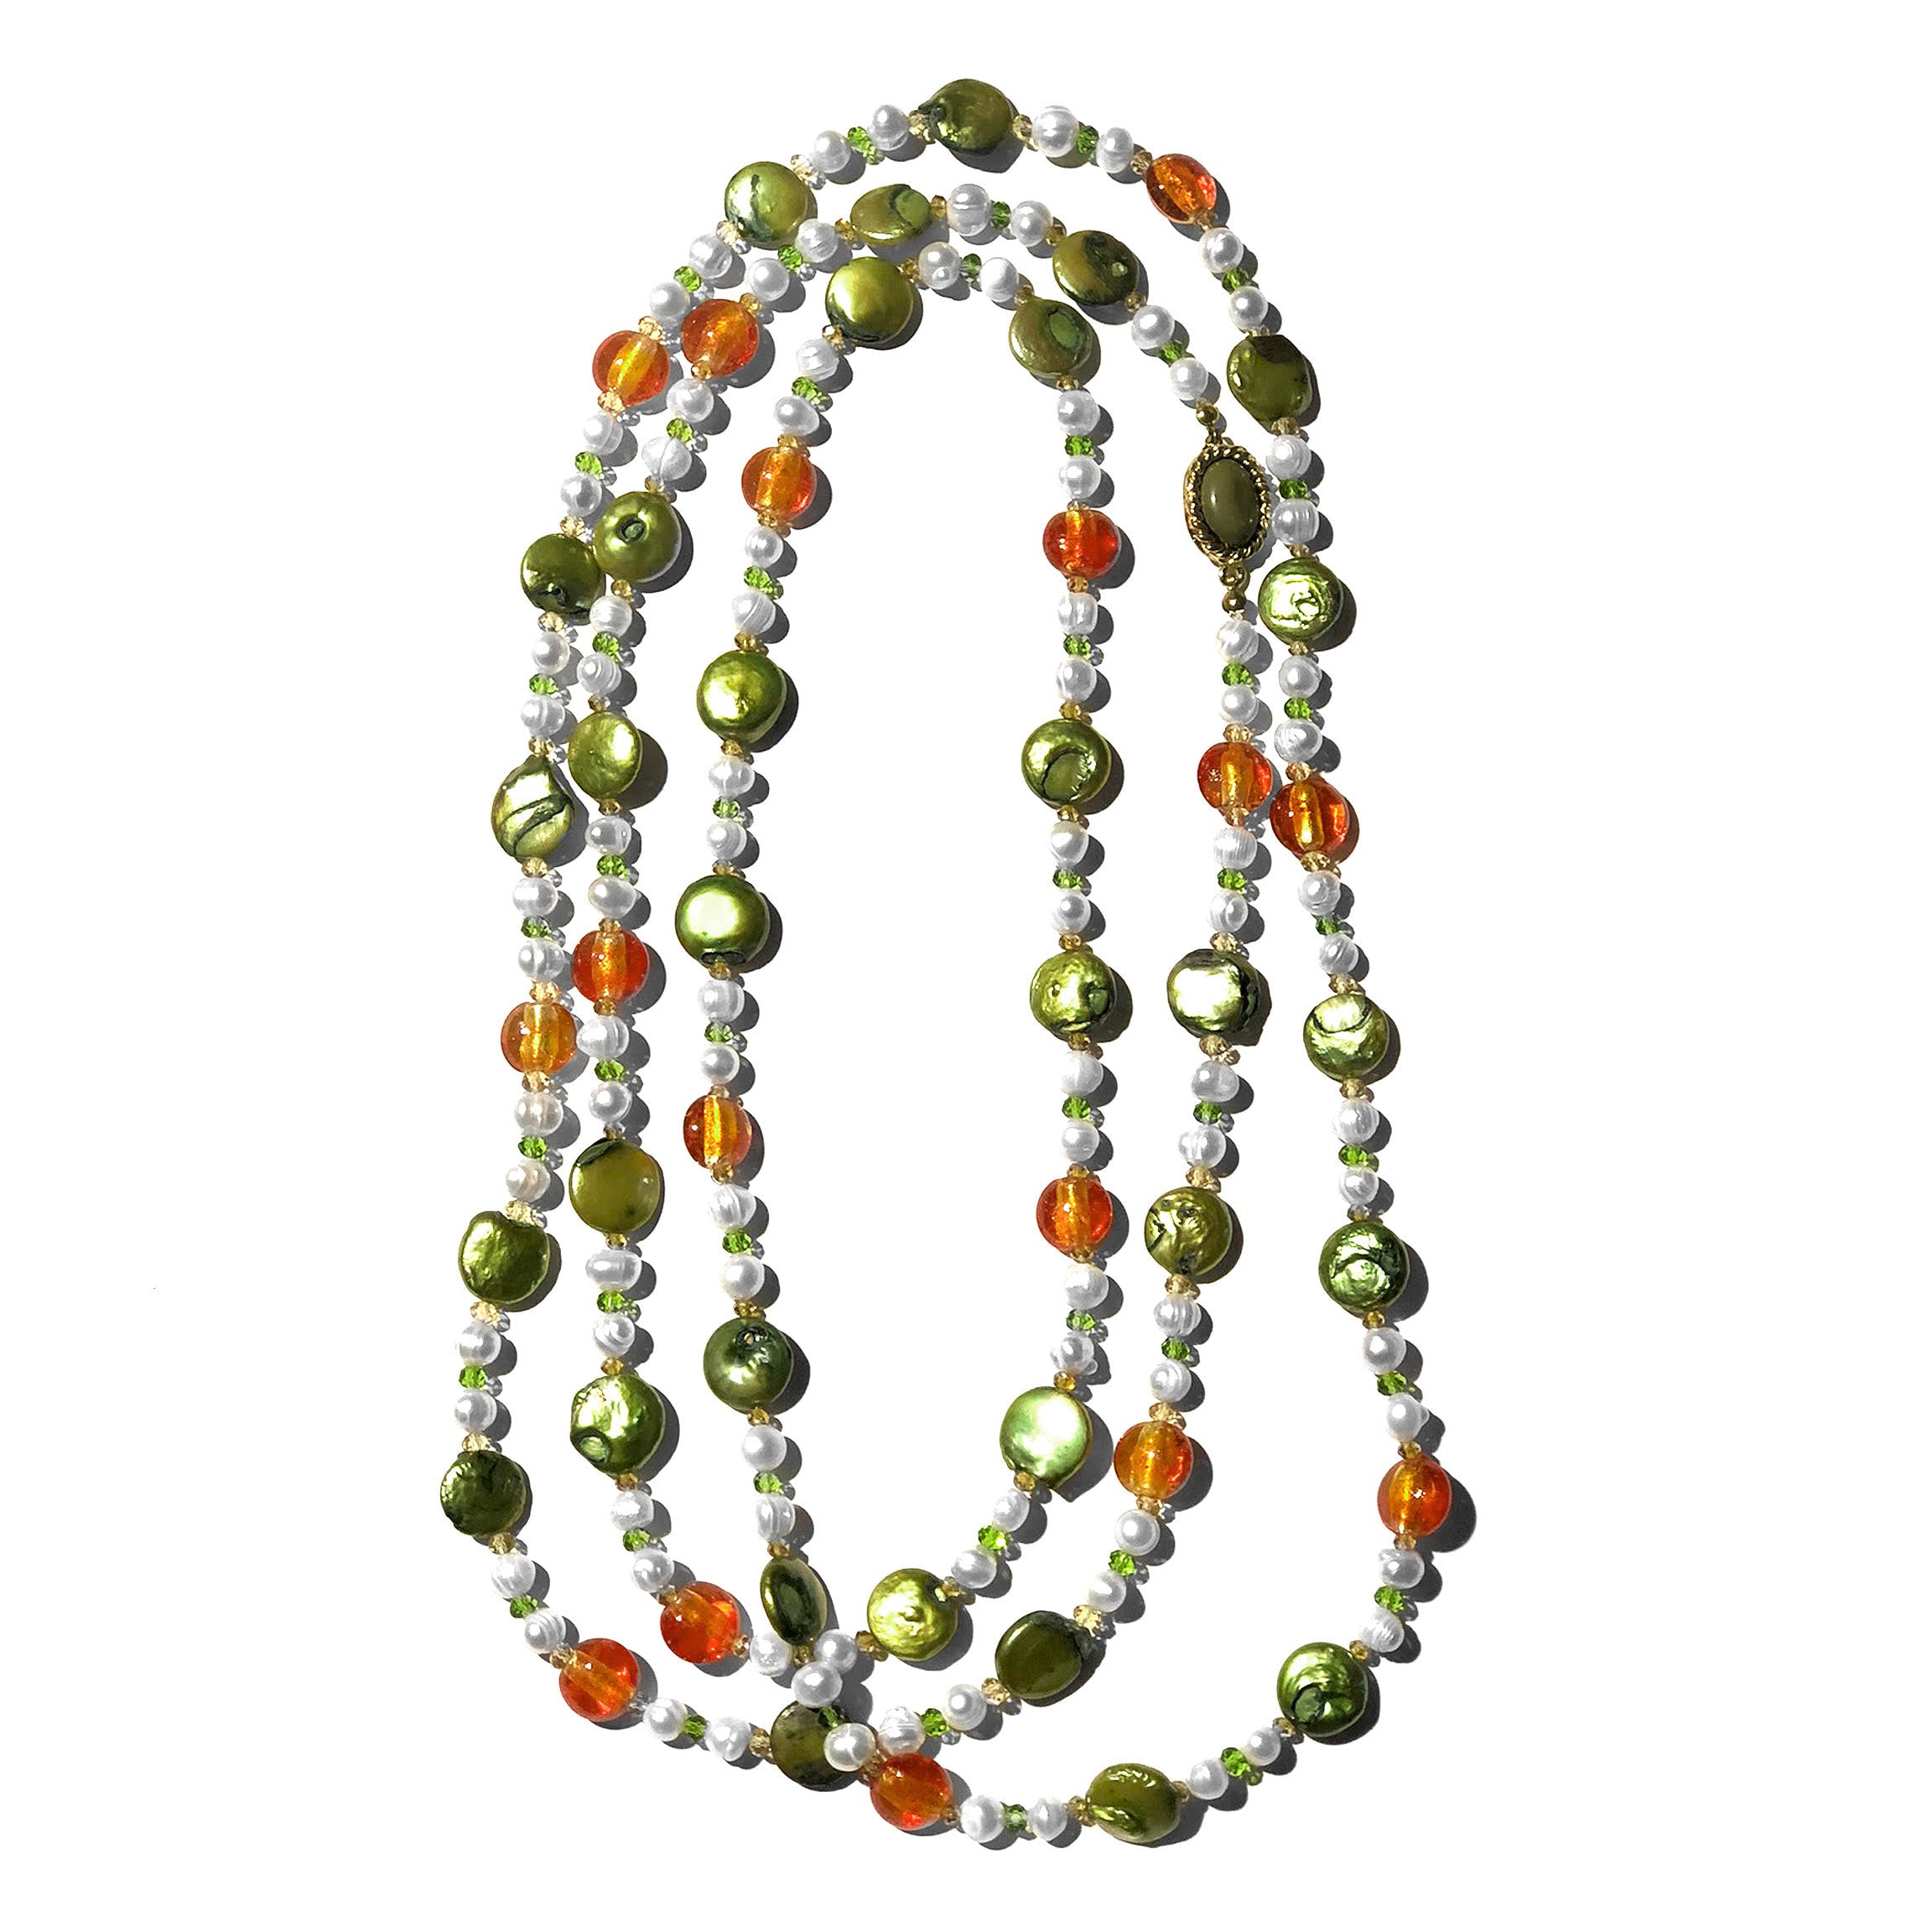 Prodotto artigianale, fatta a mano con perle naturali , chiusura in Ottone, le perle sono intervallate tra loro con cipolline di cristallo   Pietre:  Perle Naturali Piatte (12mm) color verde, perle naturali (6mm) bianche, Cristalli Arancio (10mm) , cipolline di cristallo verdi (4mm)